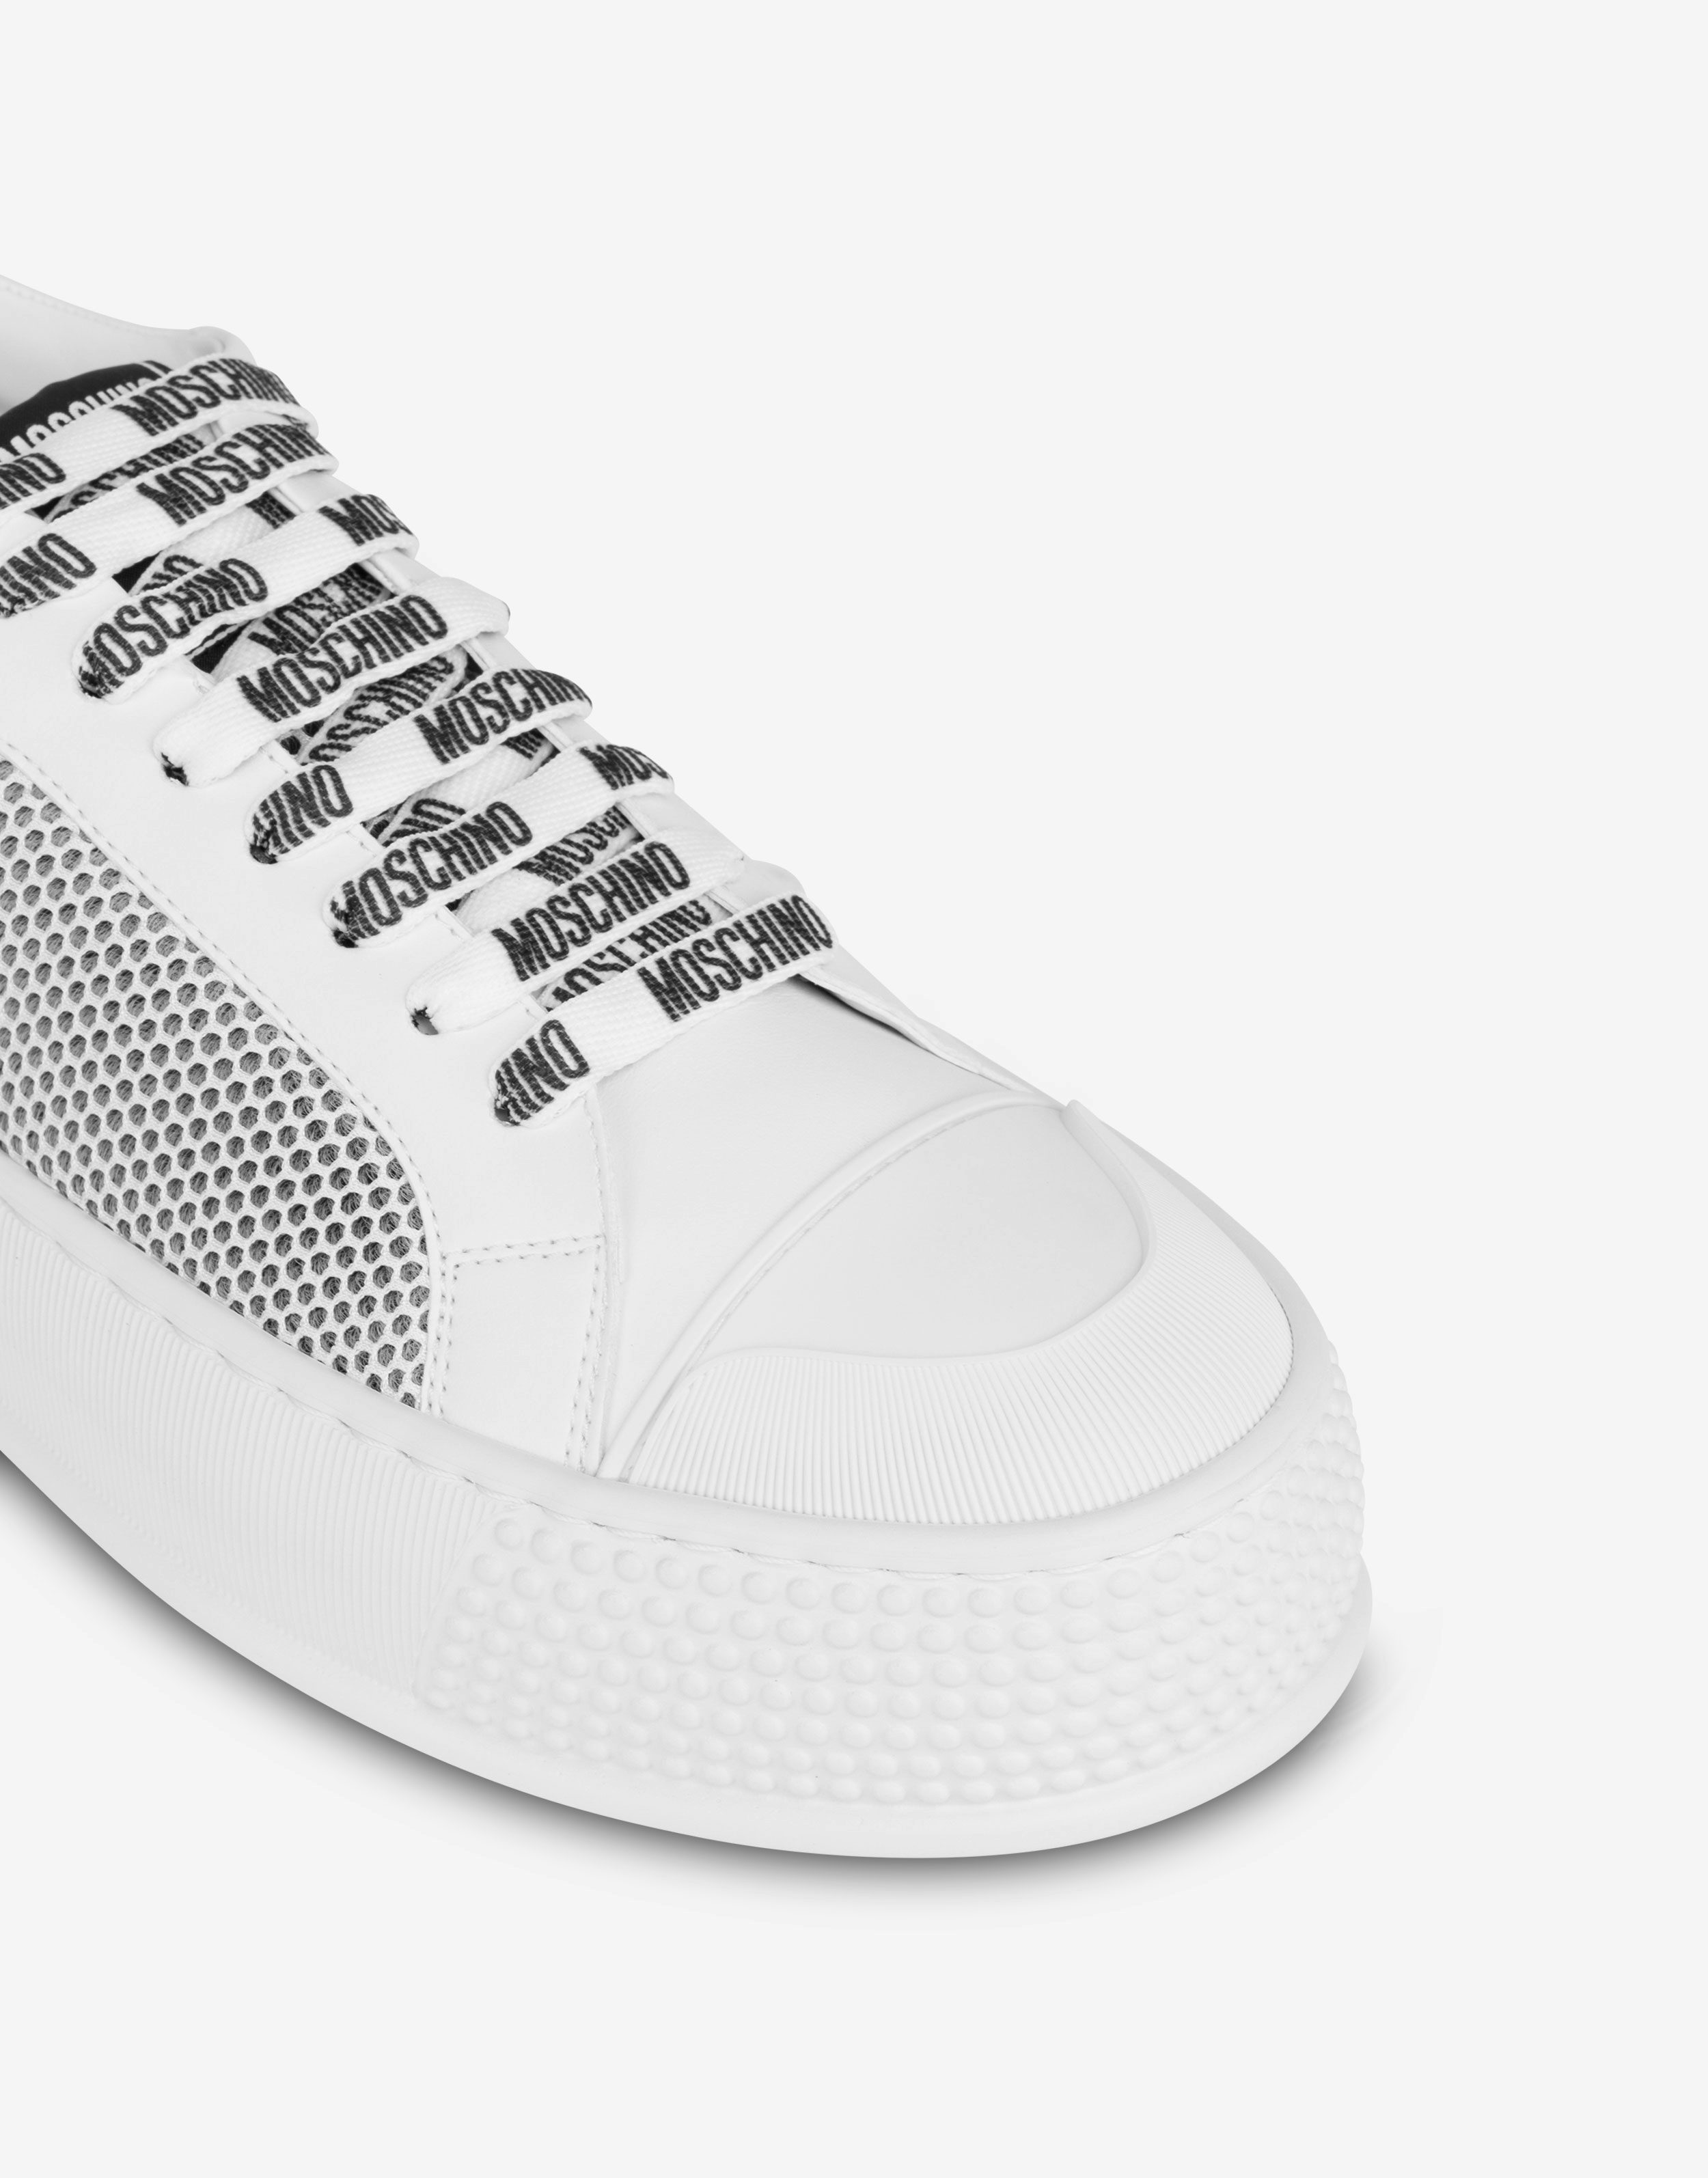 Sneakers con inserti in rete Bumps & Stripes 2